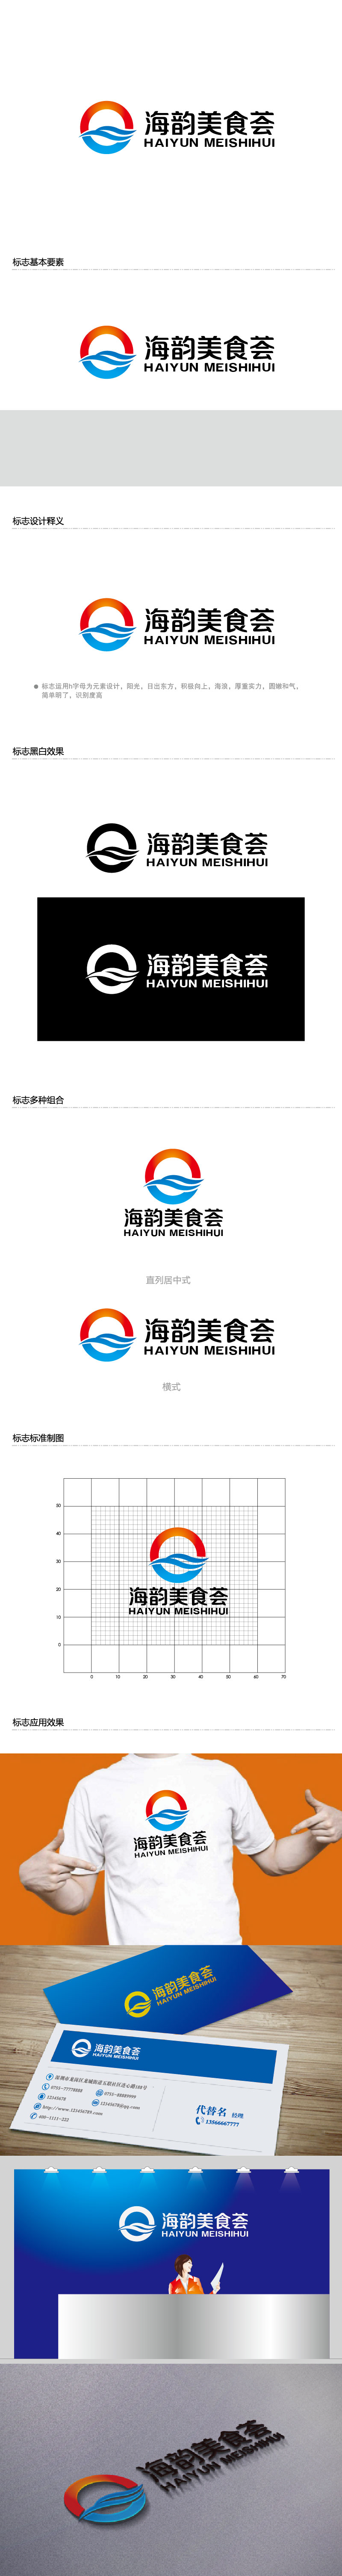 李贺的海韵美食荟logo设计